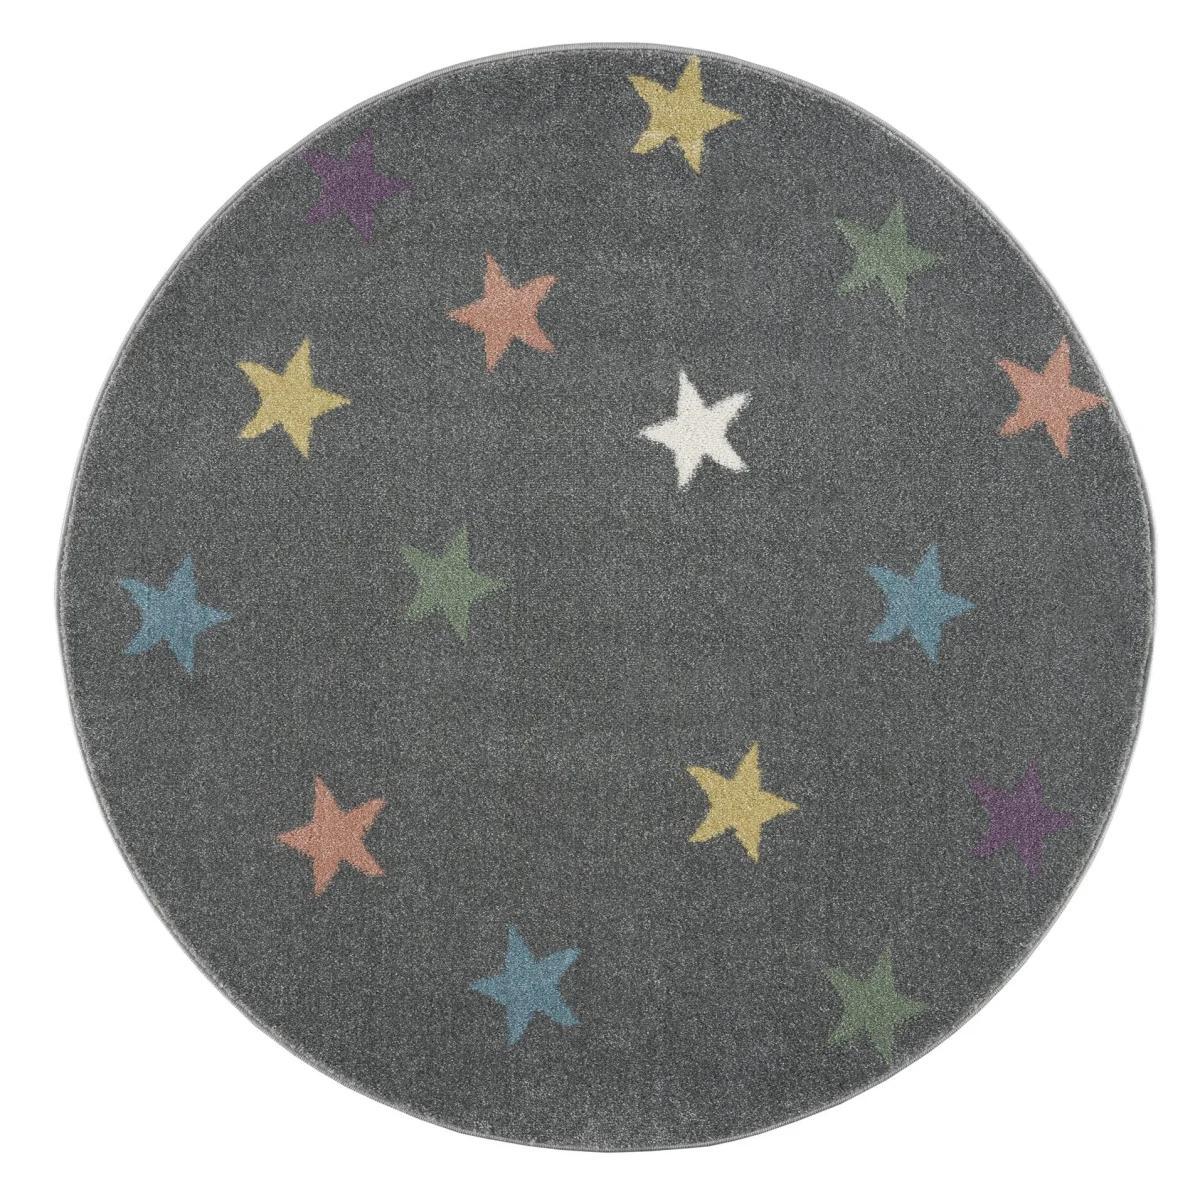 Dywan dziecięcy okrągły Grey Stars Round 133 cm do pokoju dziecięcego szary w gwiazdki nr. 2